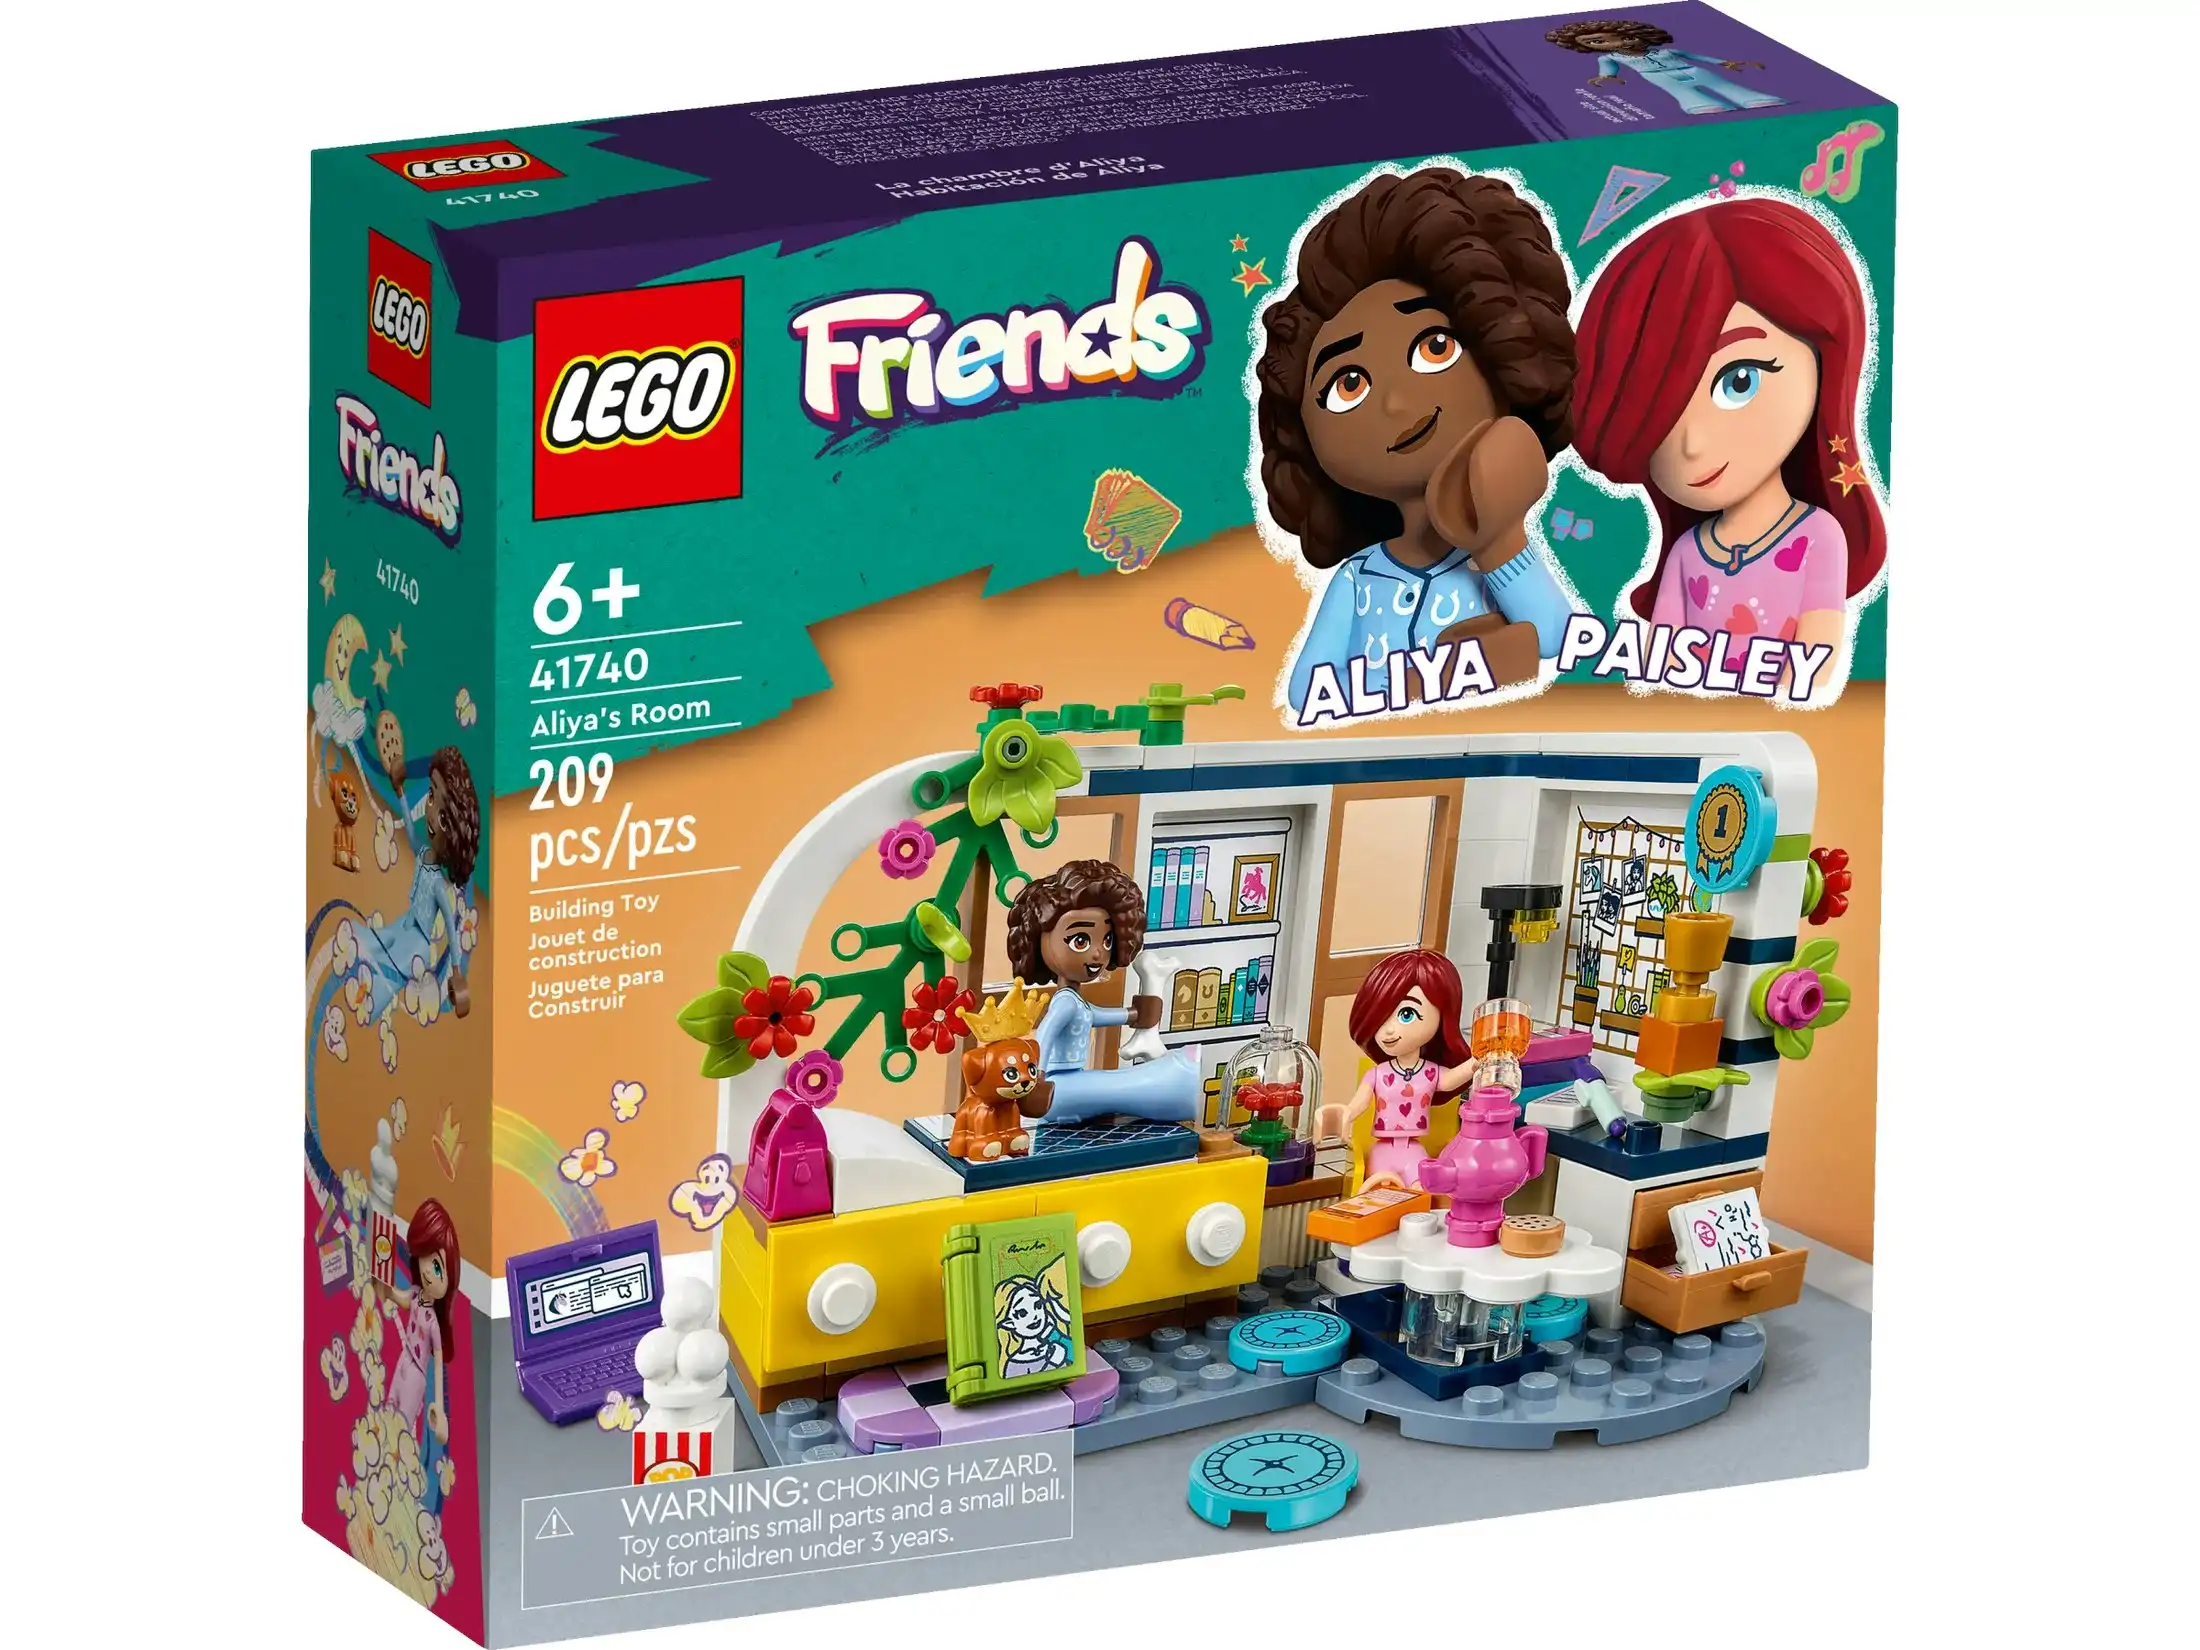 LEGO 41740 Aliyas Room - Friends